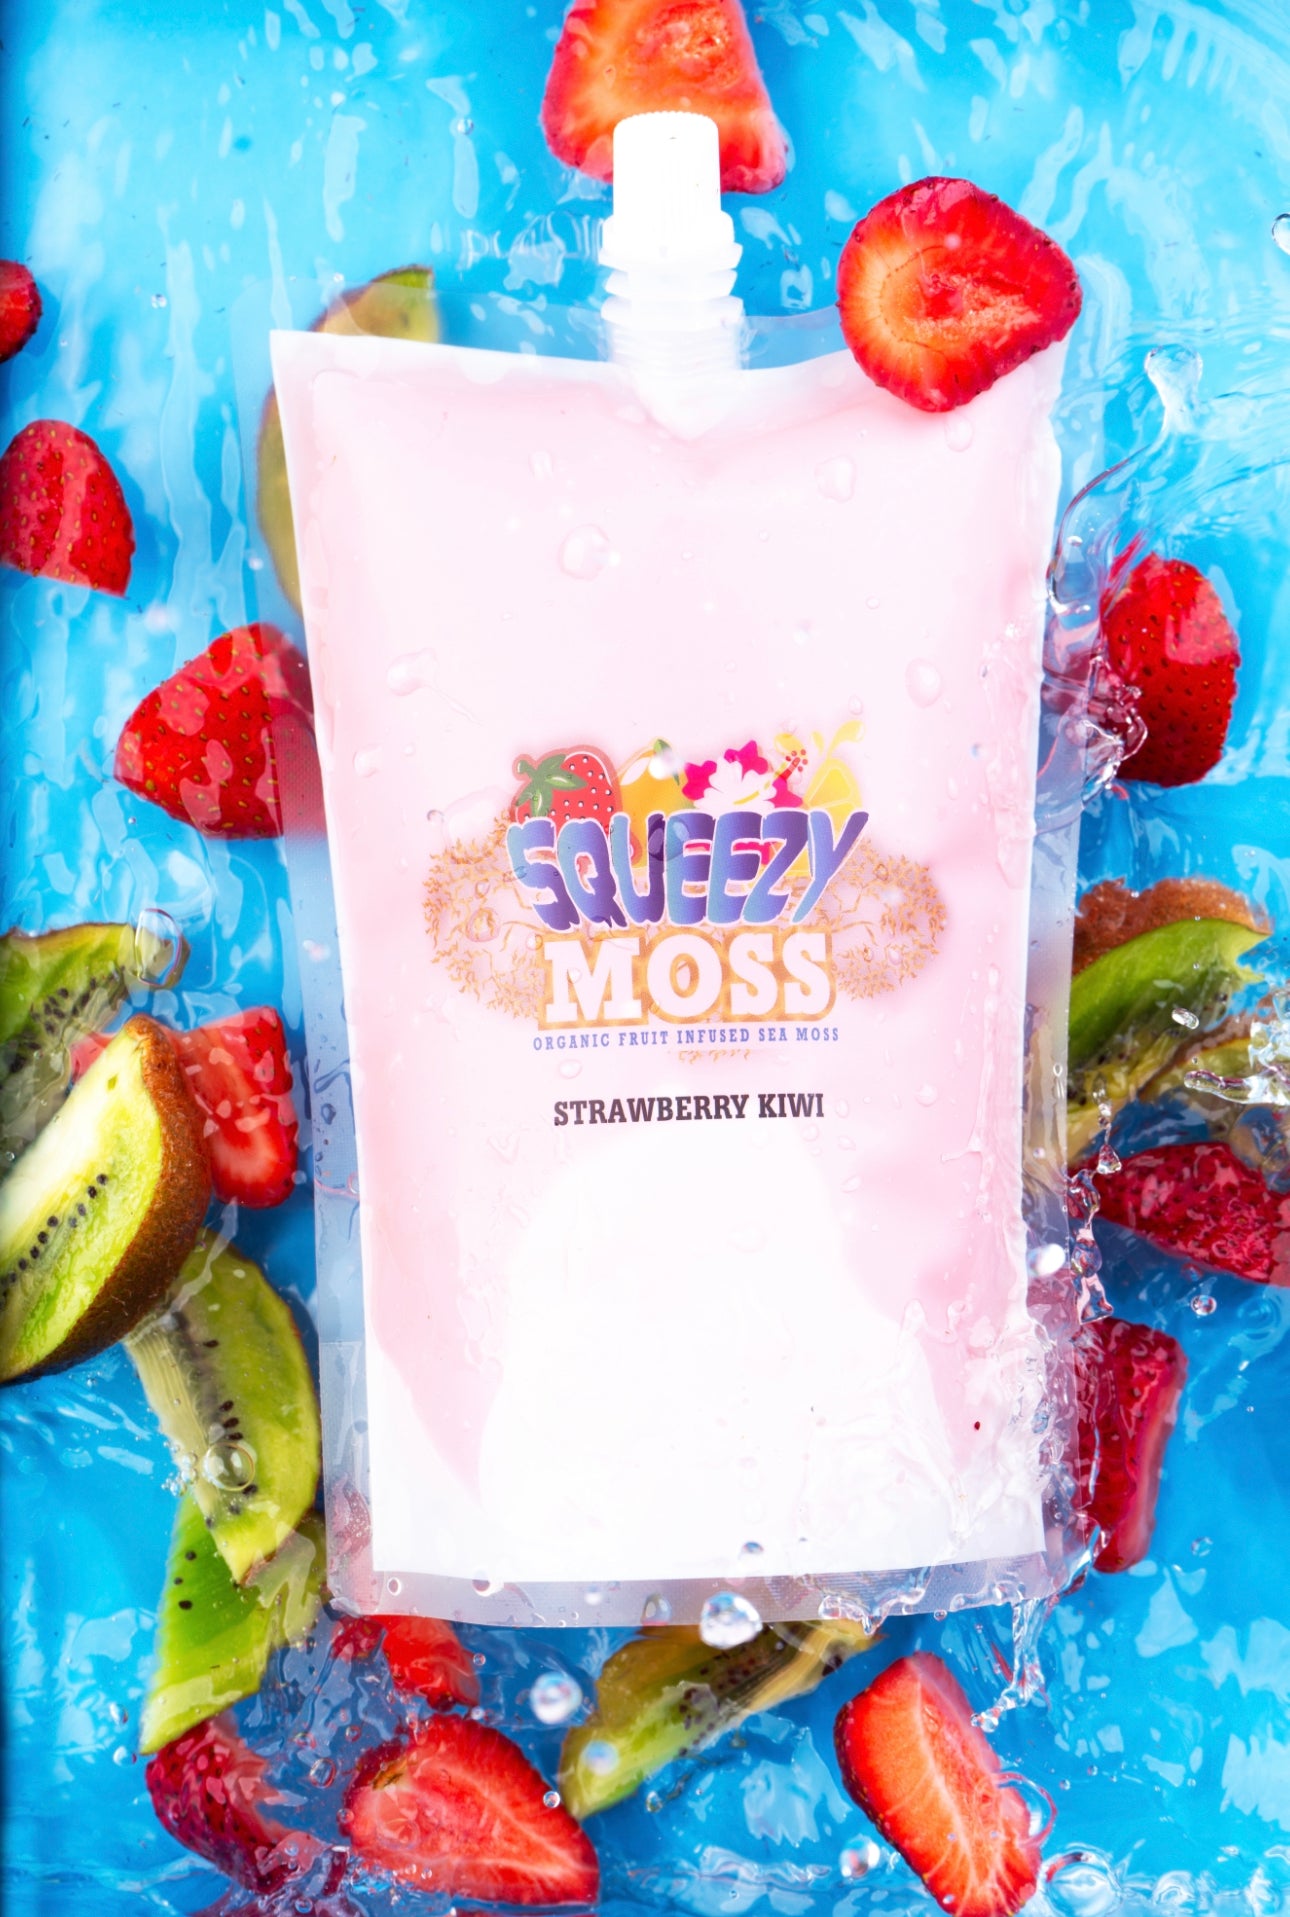 Strawberry Kiwi Squeezy Moss